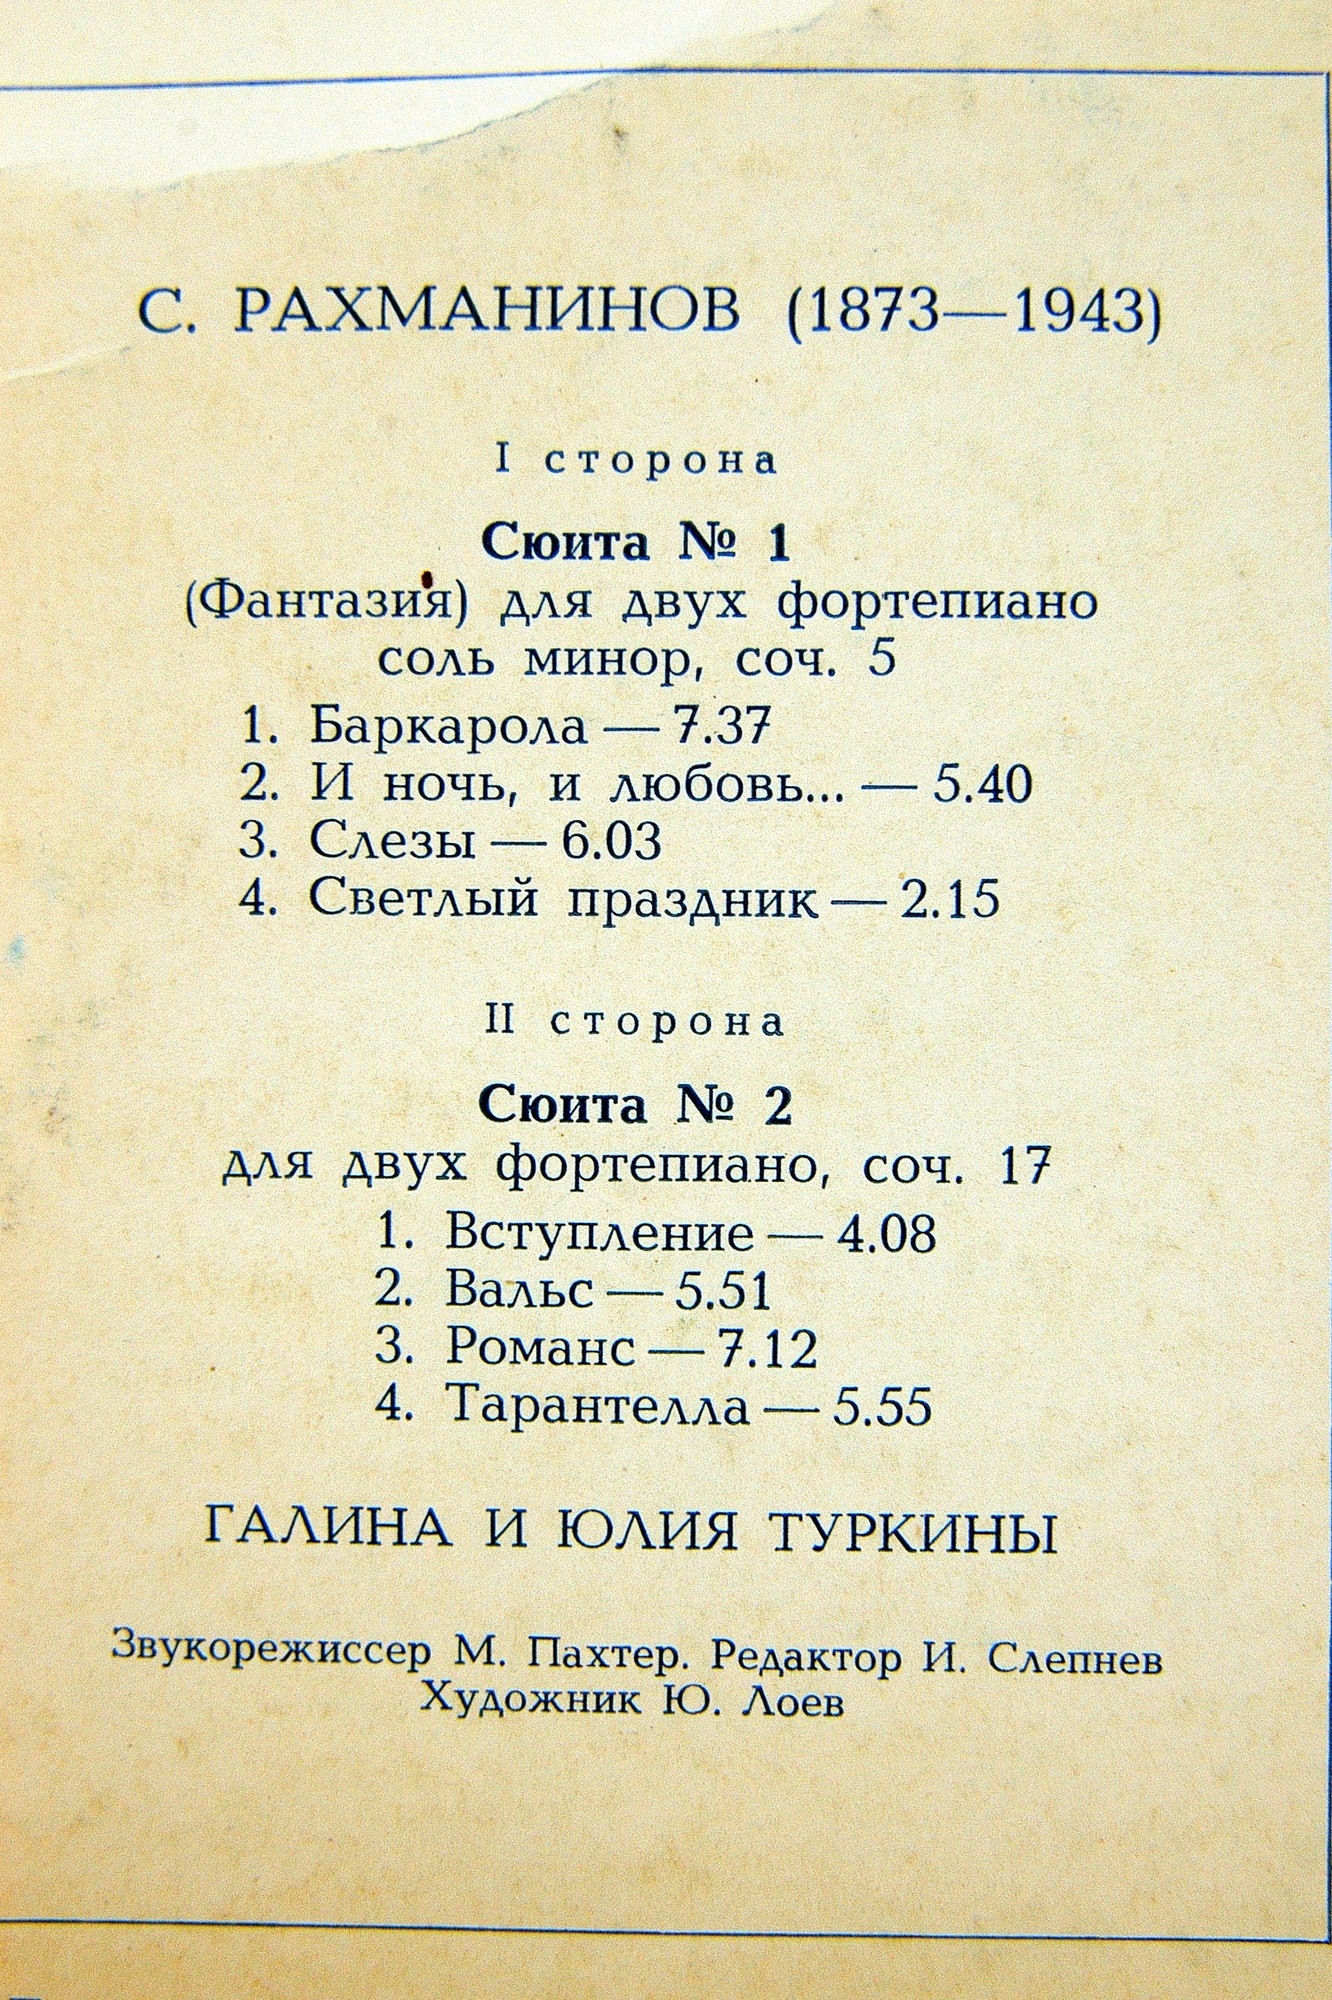 С. РАХМАНИНОВ (1873—1943): Сюиты для двух ф-но (Г. и Ю. Туркины)